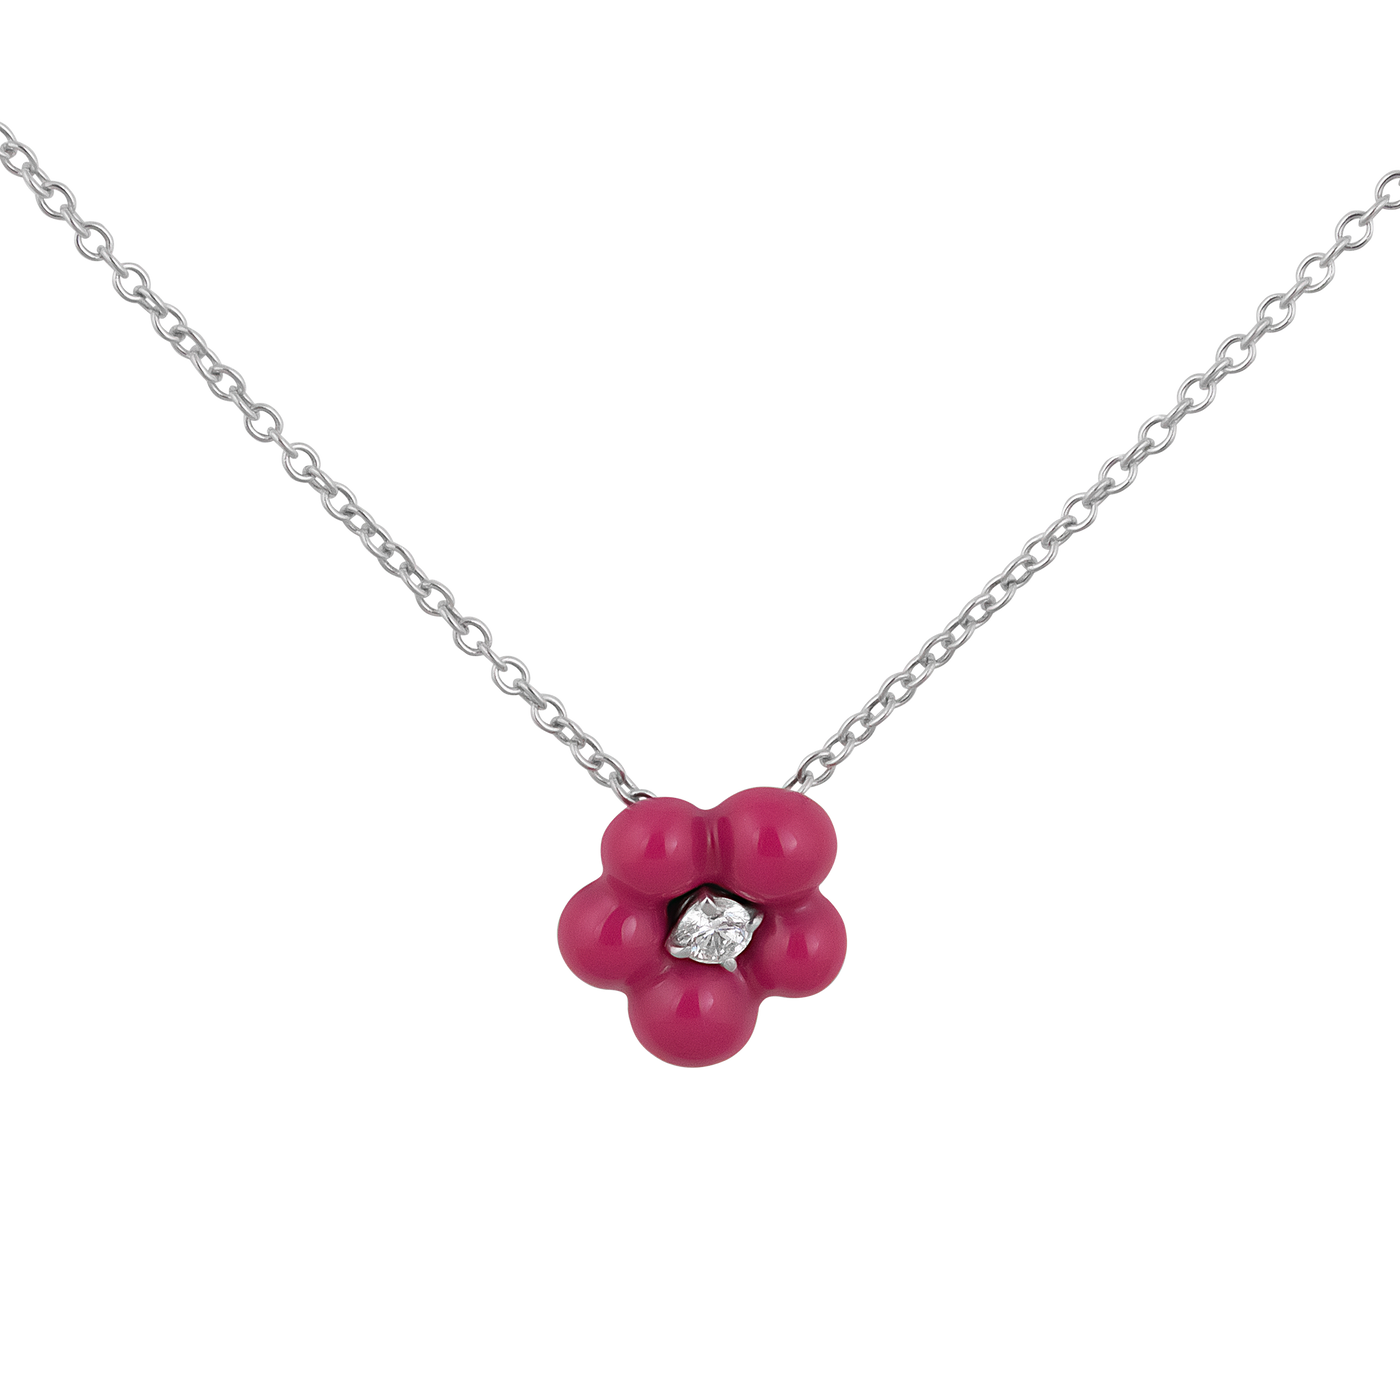 Stefan Hafner 18K White Gold Diamond & Pink Enamel Flower Pendant Necklace